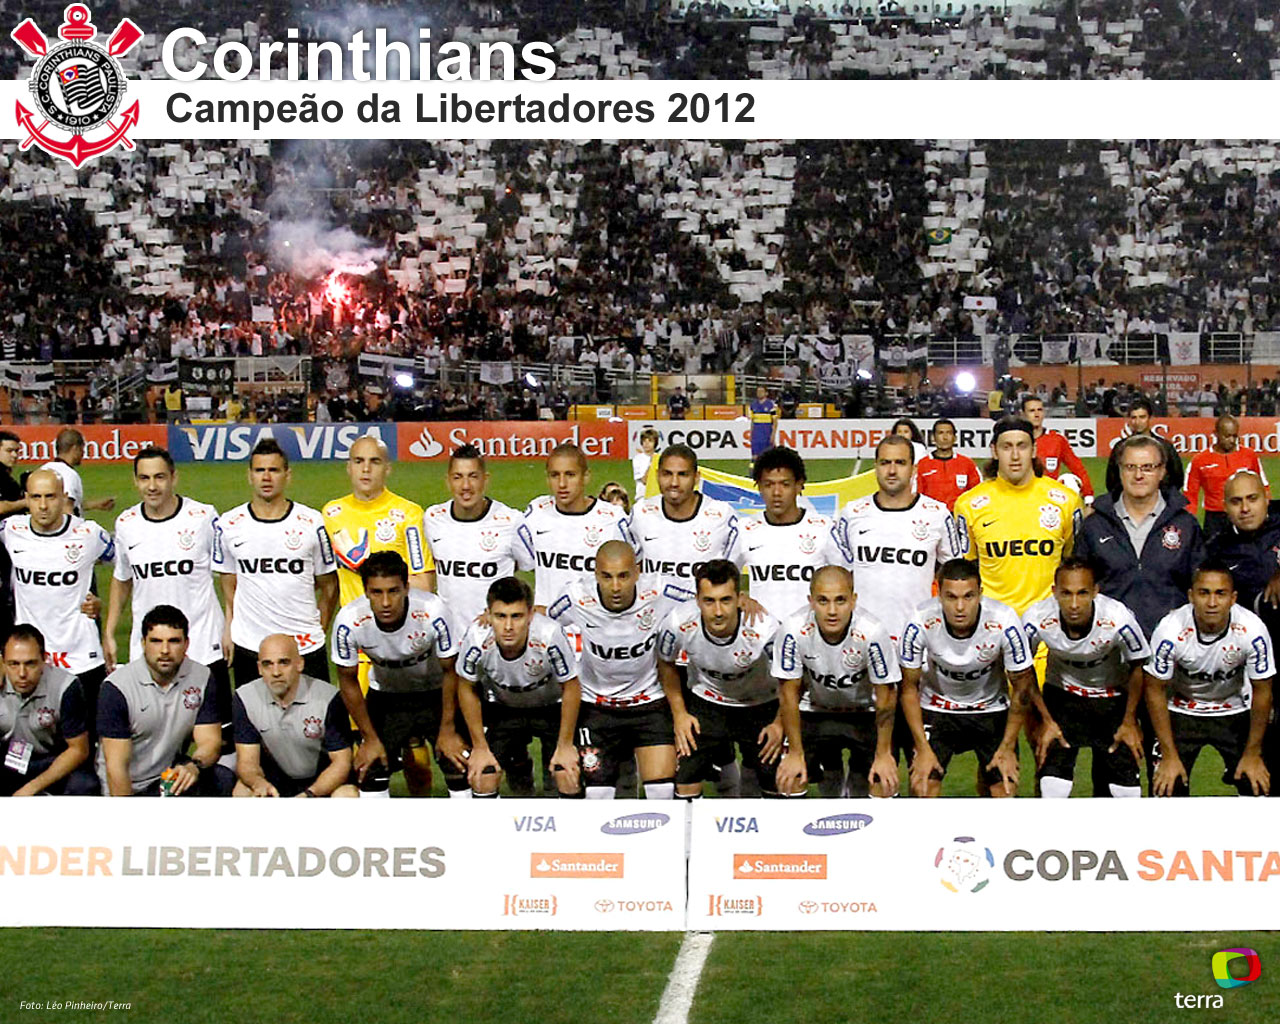 Wallpaper Corinthians Campeão da Libertadores 2012 - 06